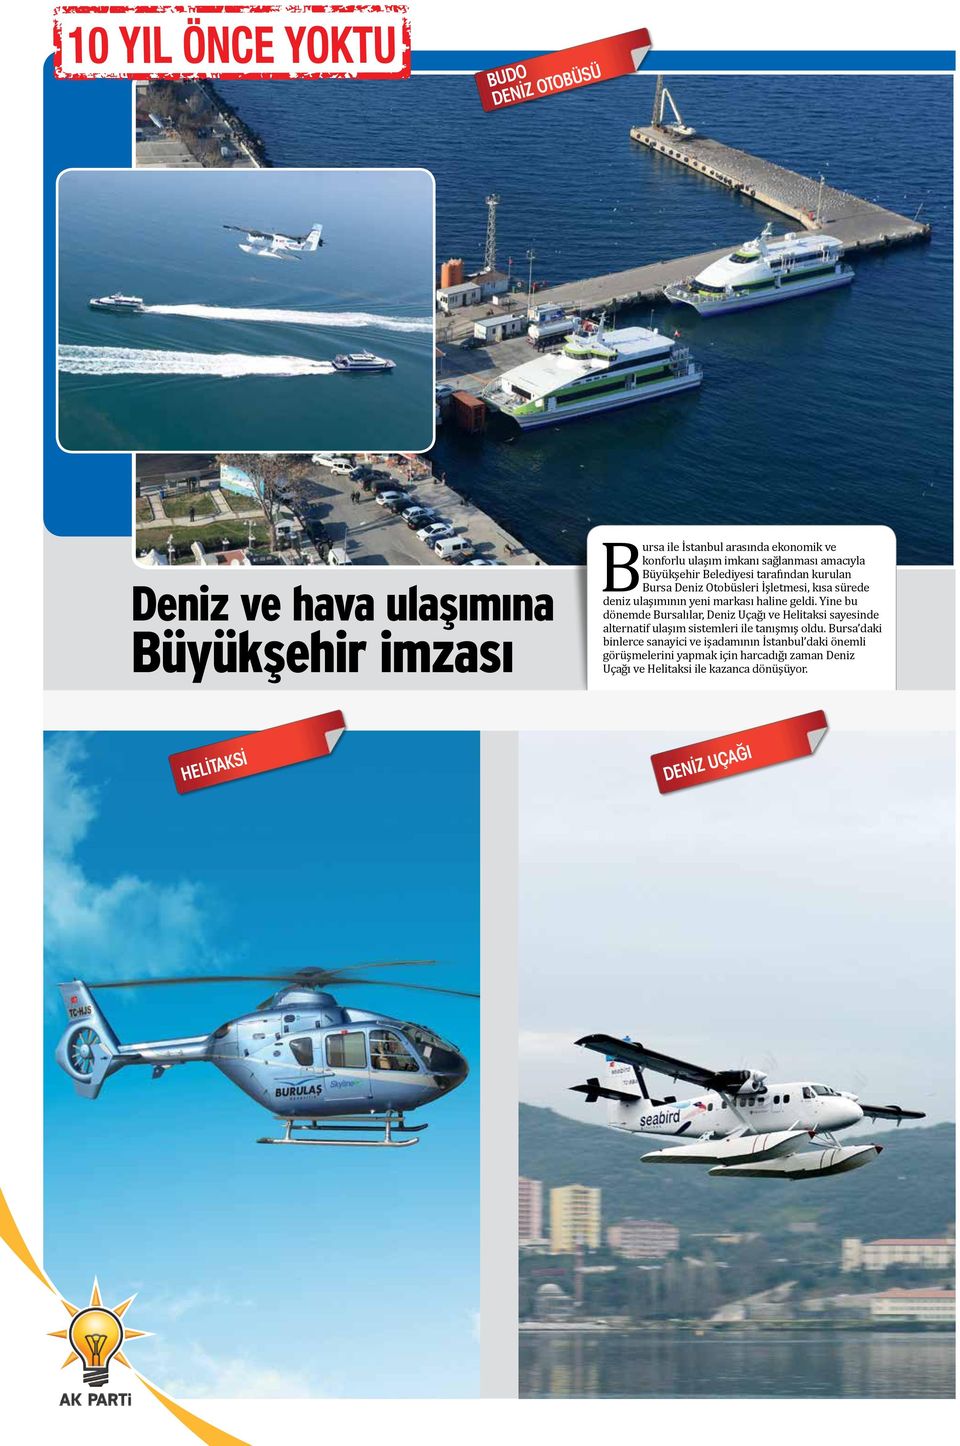 Yine bu dönemde Bursalılar, Deniz Uçağı ve Helitaksi sayesinde alternatif ulaşım sistemleri ile tanışmış oldu.